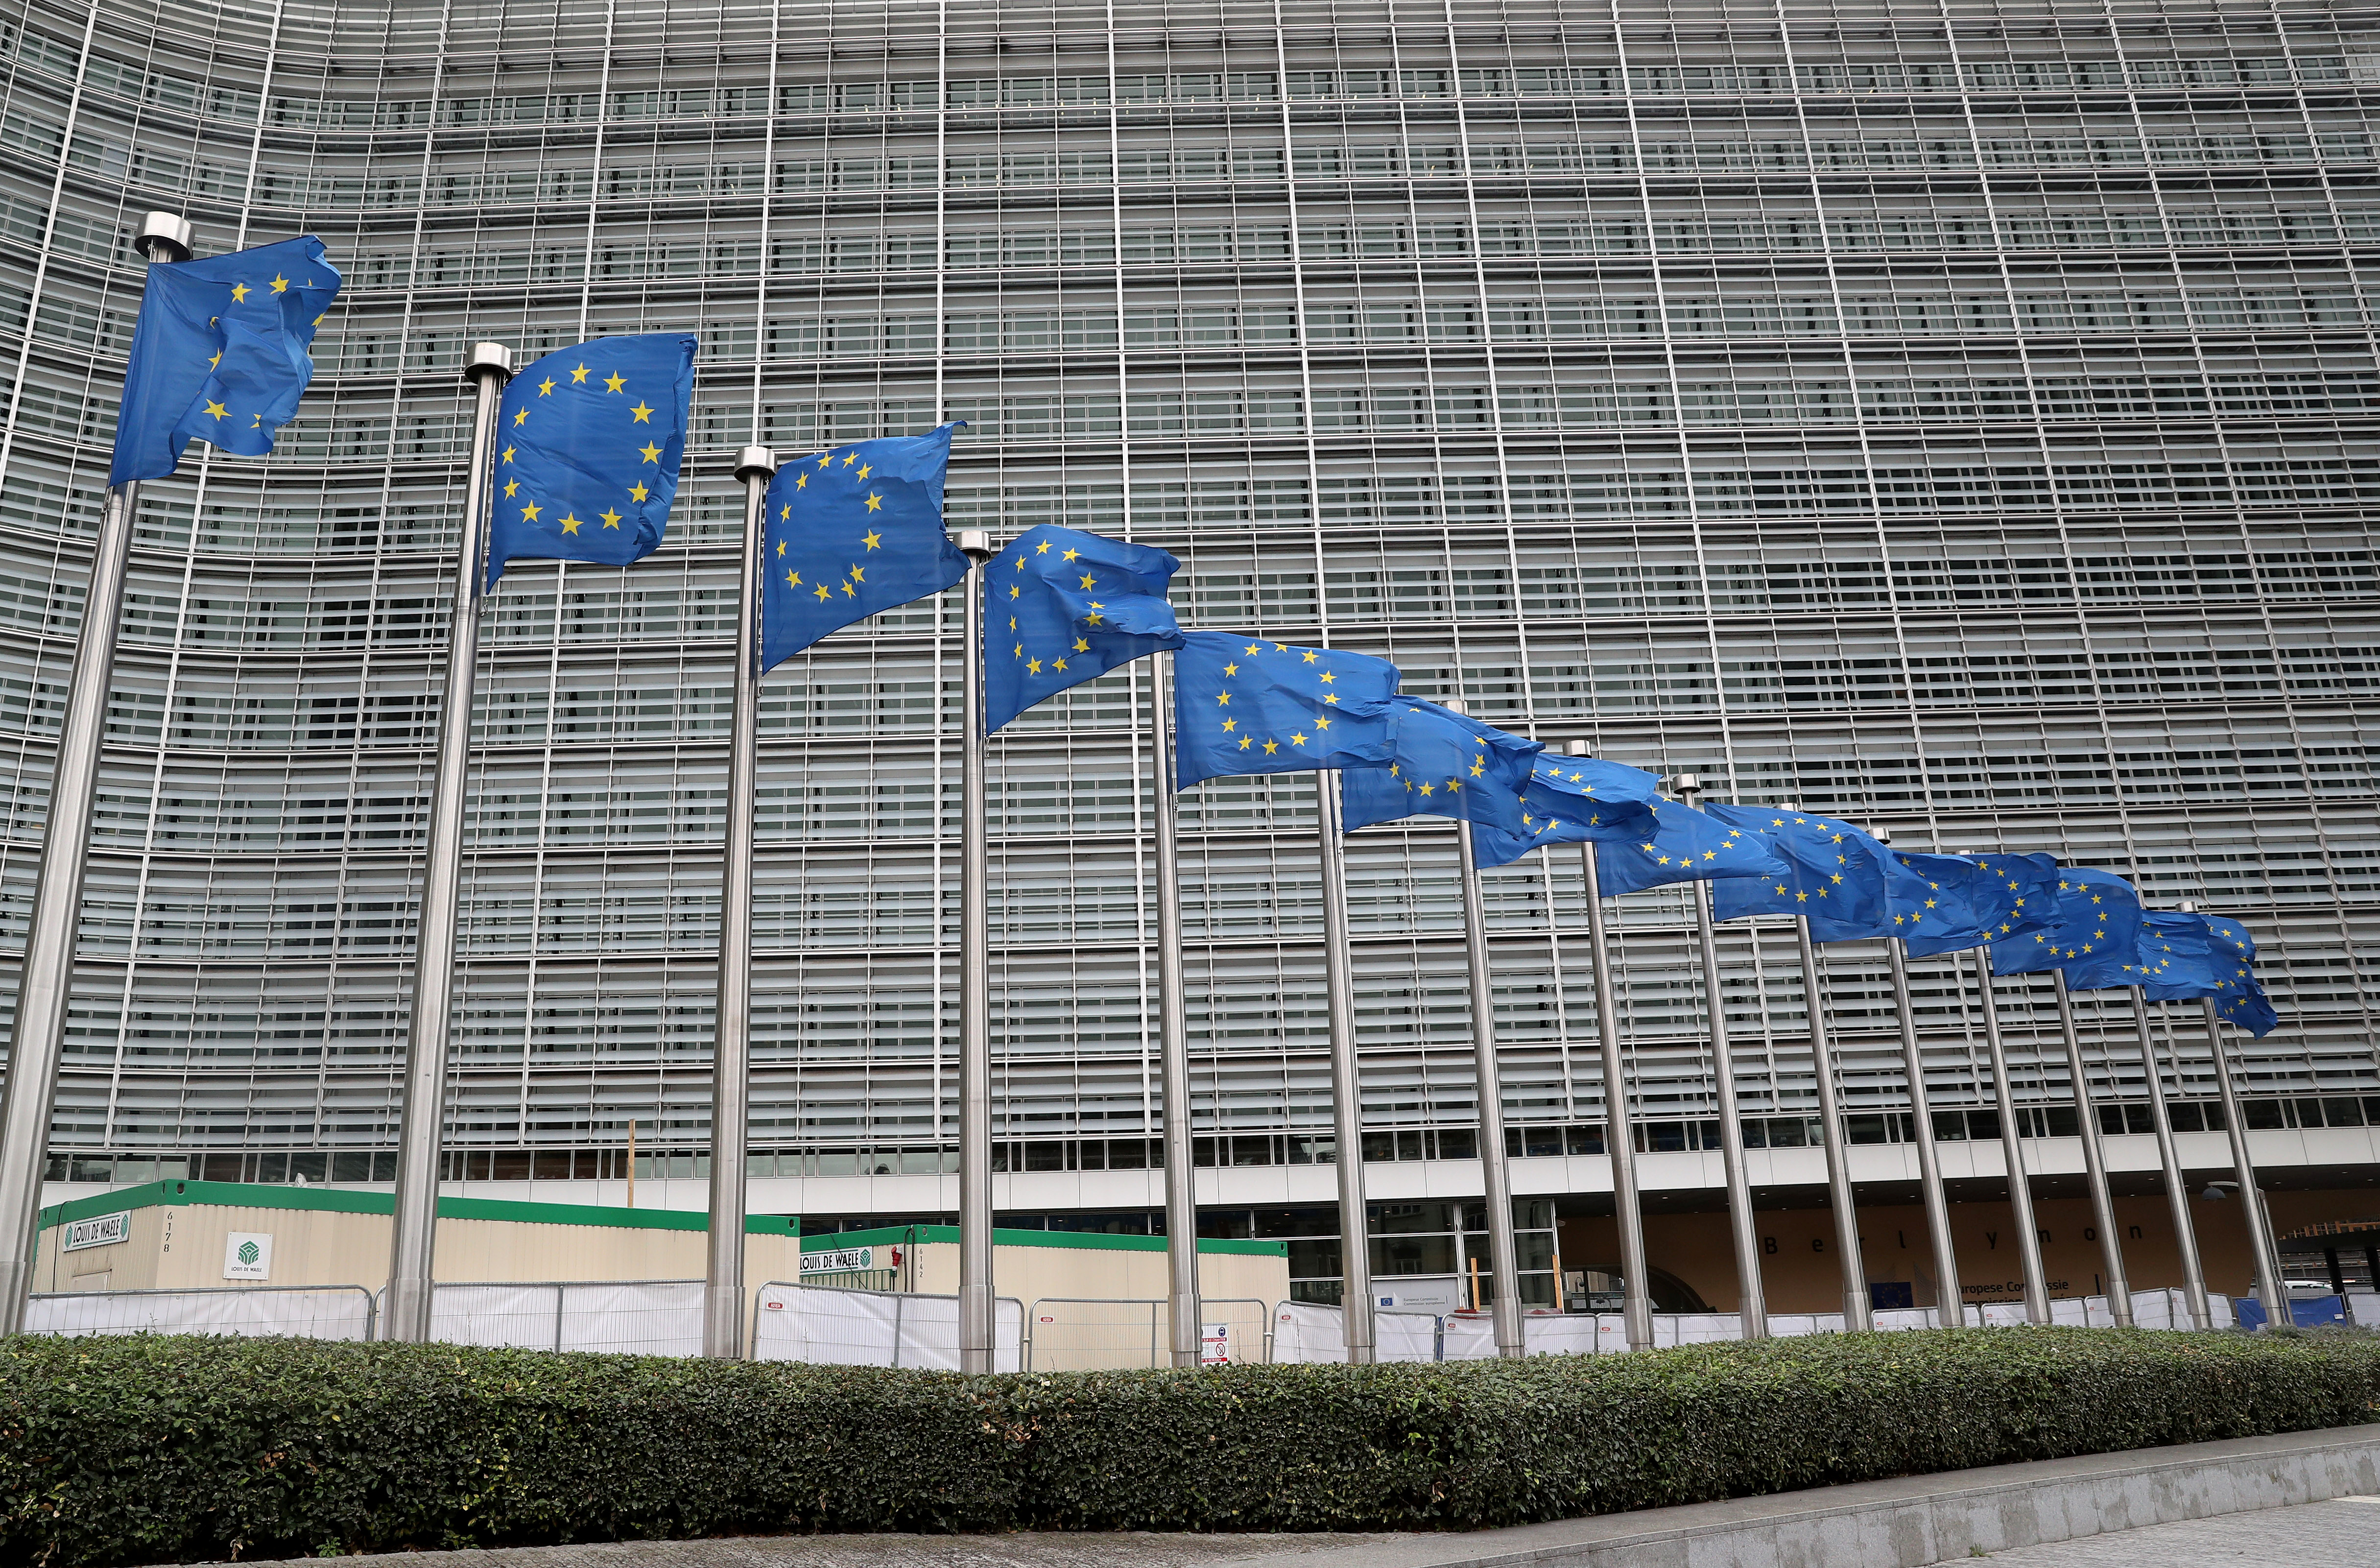 Déficit public excessif : la Commission européenne compte ouvrir une procédure disciplinaire contre la France